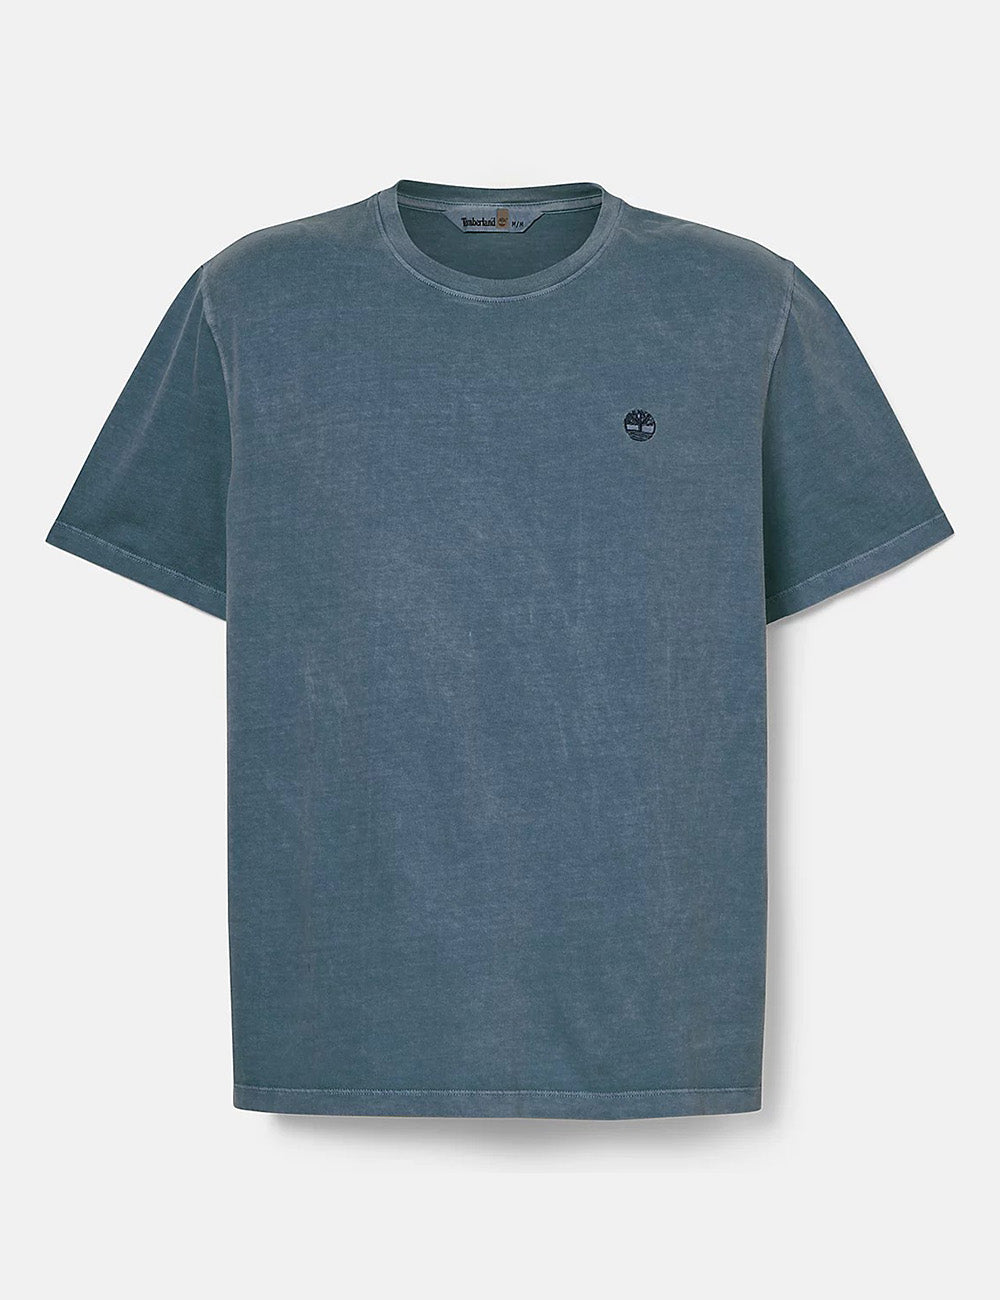 Timberland Dunstan River Garment Dyed T-Shirt - Dark Sapphire